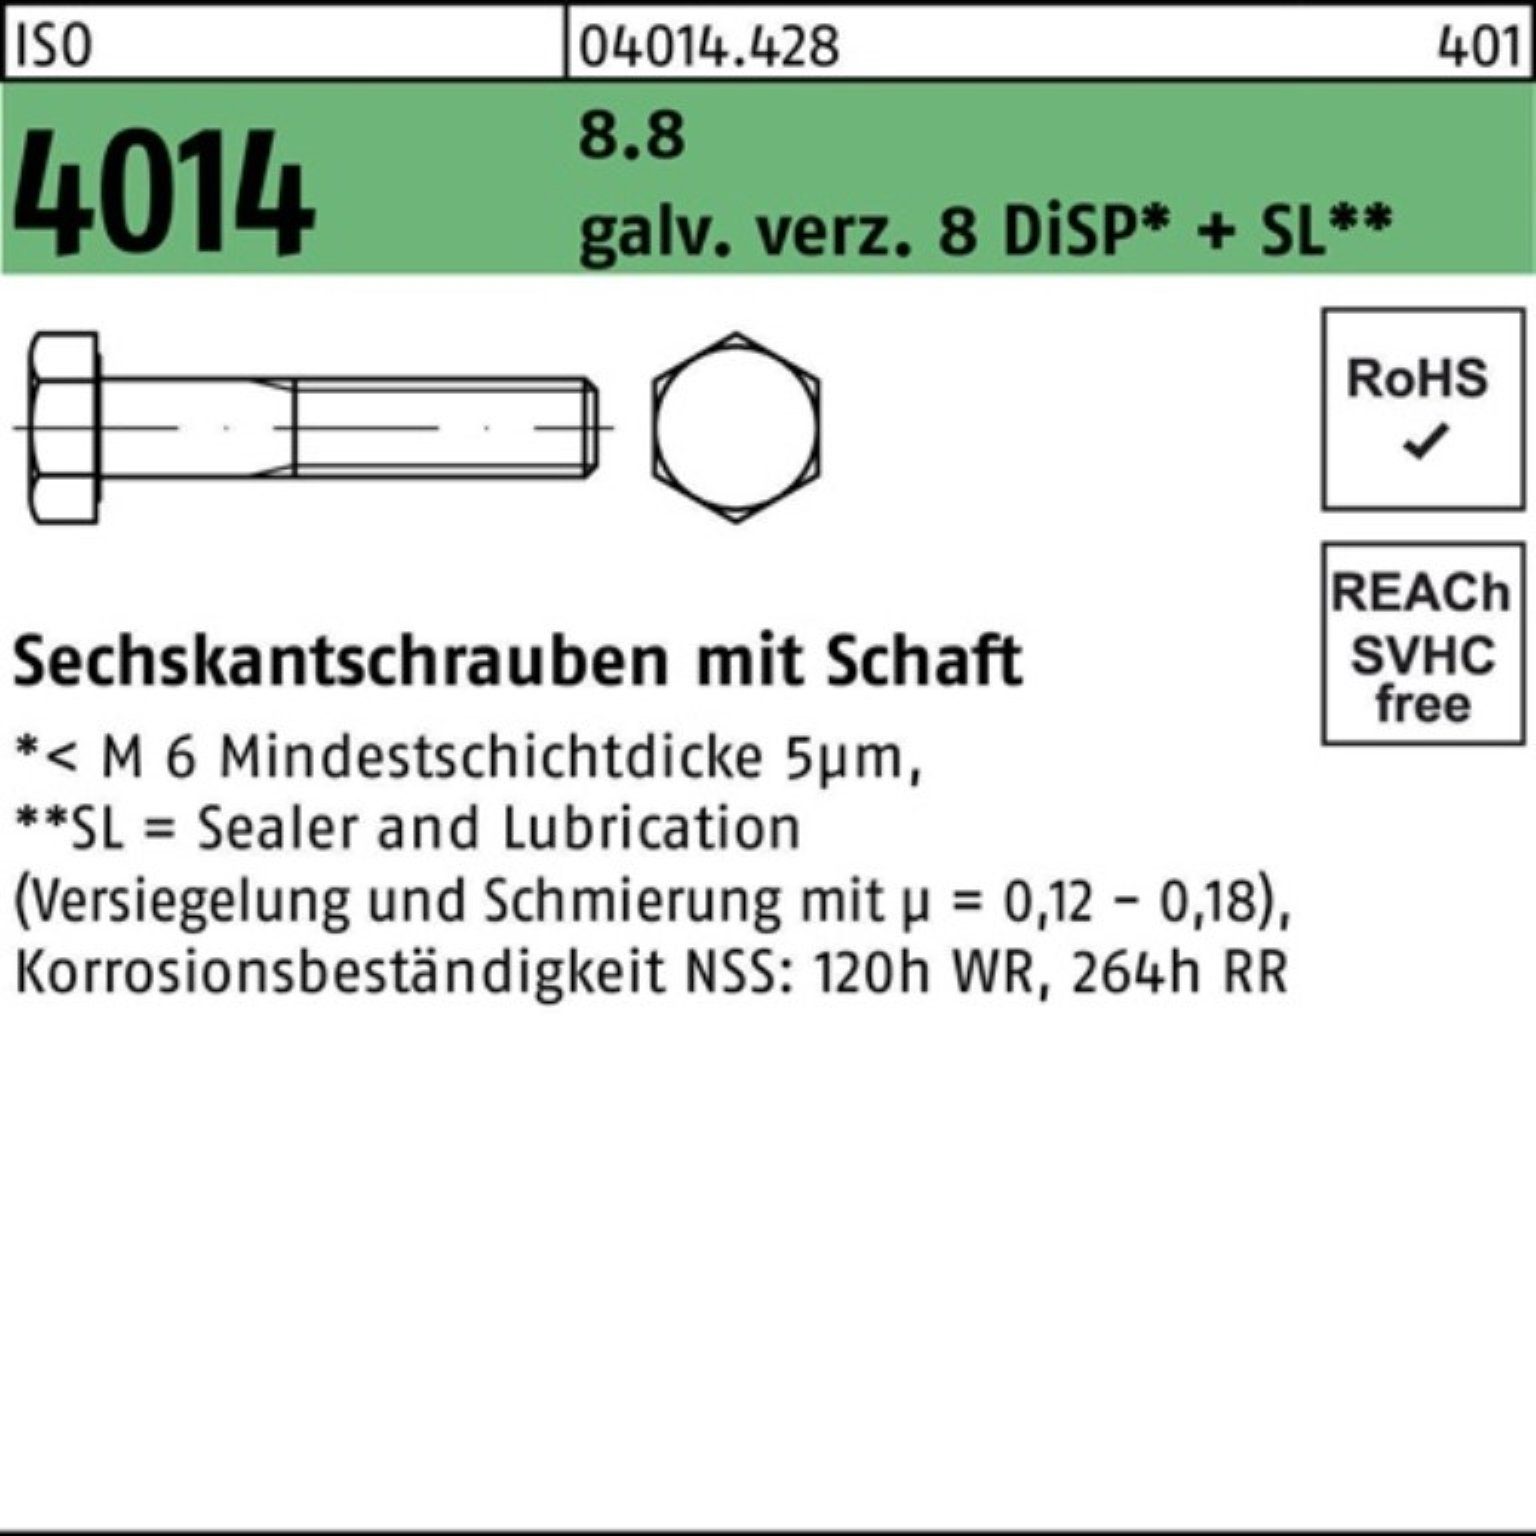 Bufab Sechskantschraube 100er Pack Sechskantschraube ISO 4014 Schaft M20x120 8.8 galv.verz. 8